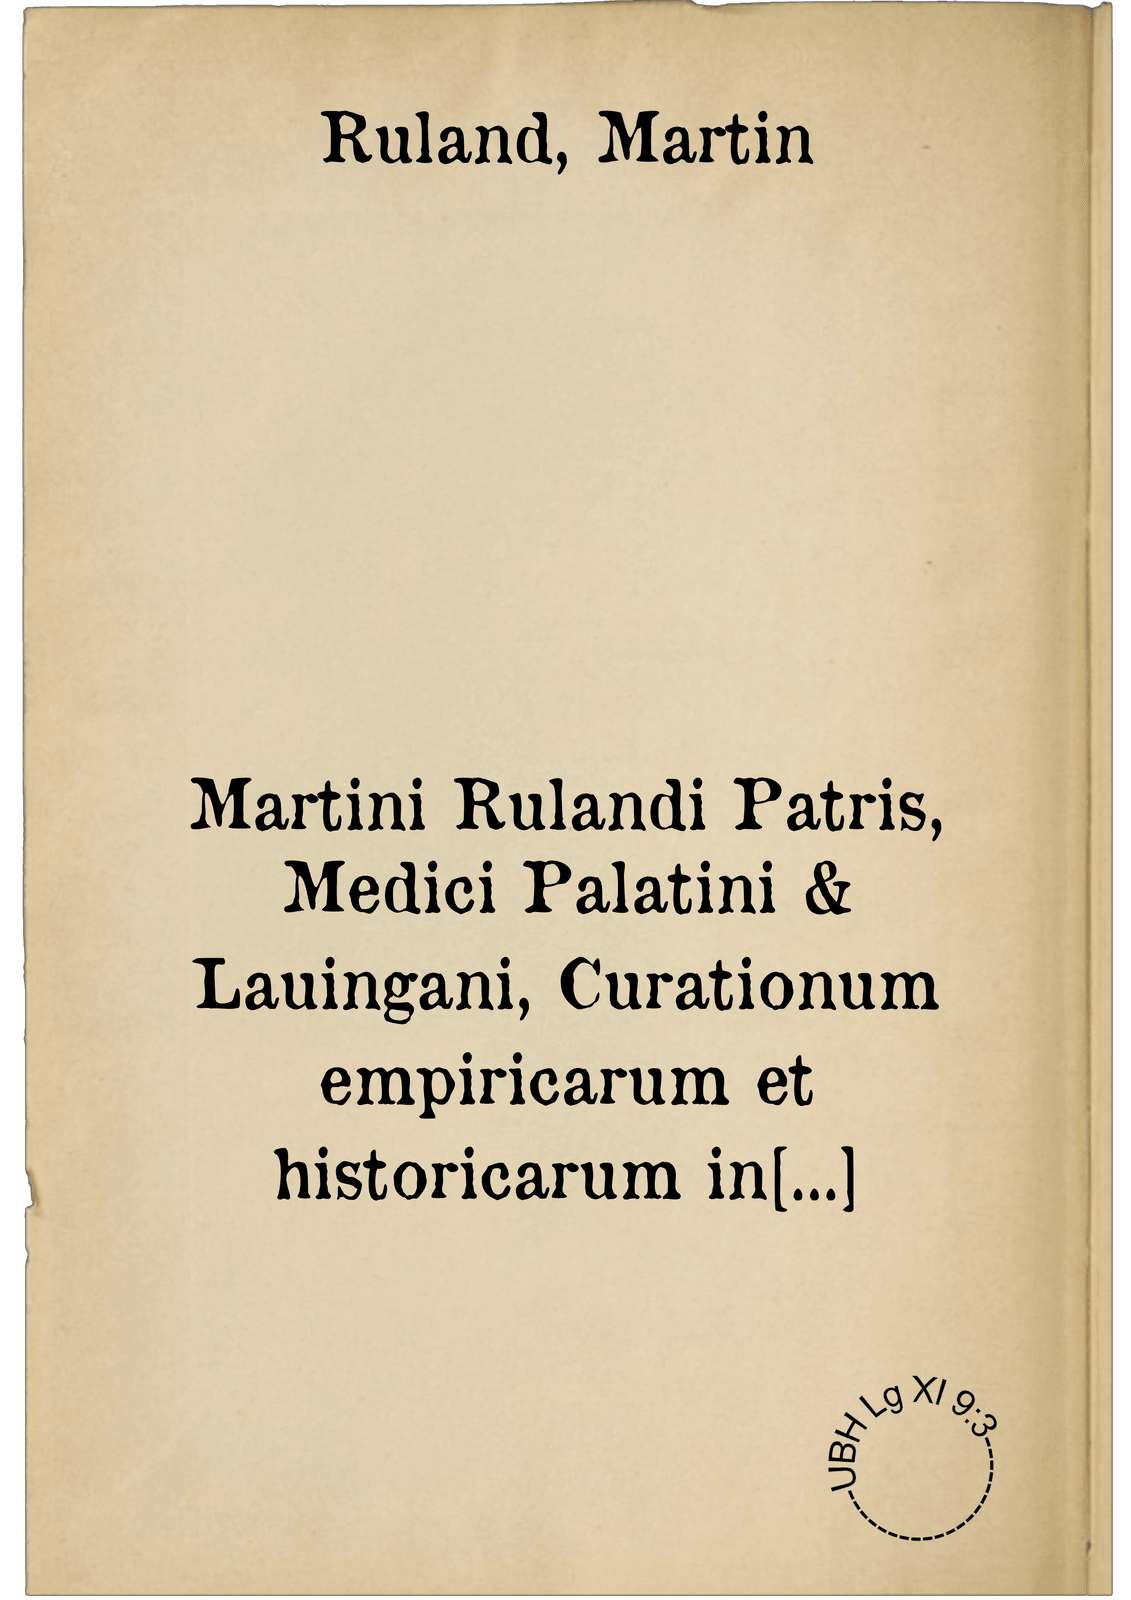 Martini Rulandi Patris, Medici Palatini & Lauingani, Curationum empiricarum et historicarum in certis locis et notis hominib. optime riteque probatarum atque expertarum. Centuria sexta